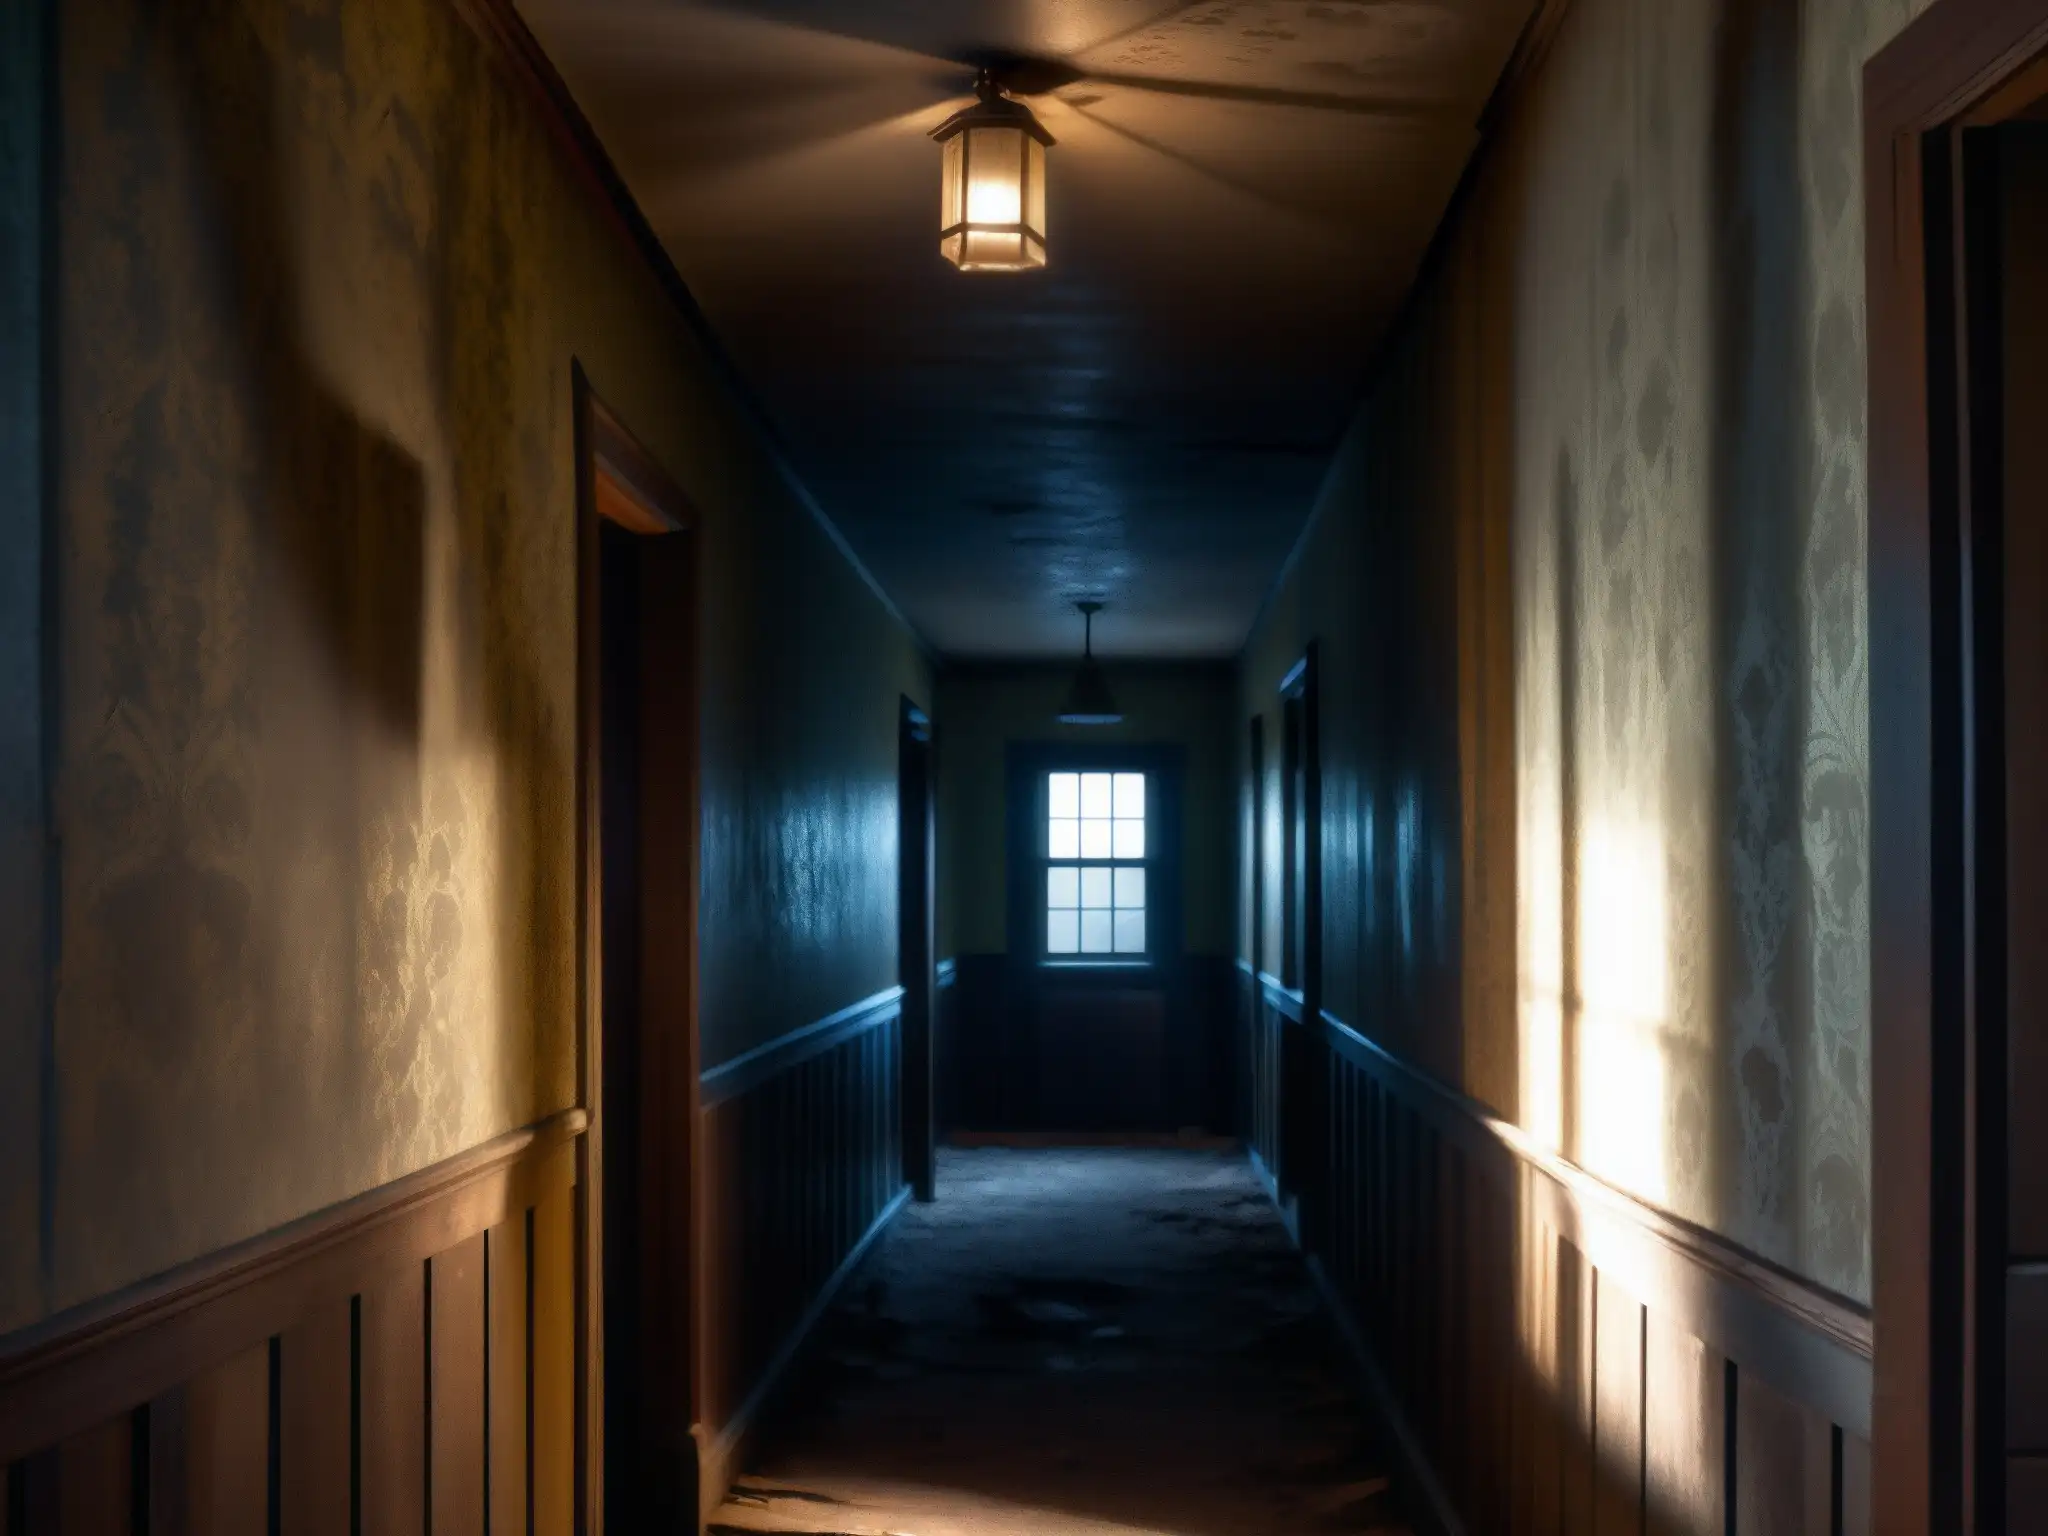 Un pasillo sombrío en una casa abandonada, con papel tapiz desgastado y suelo crujiente